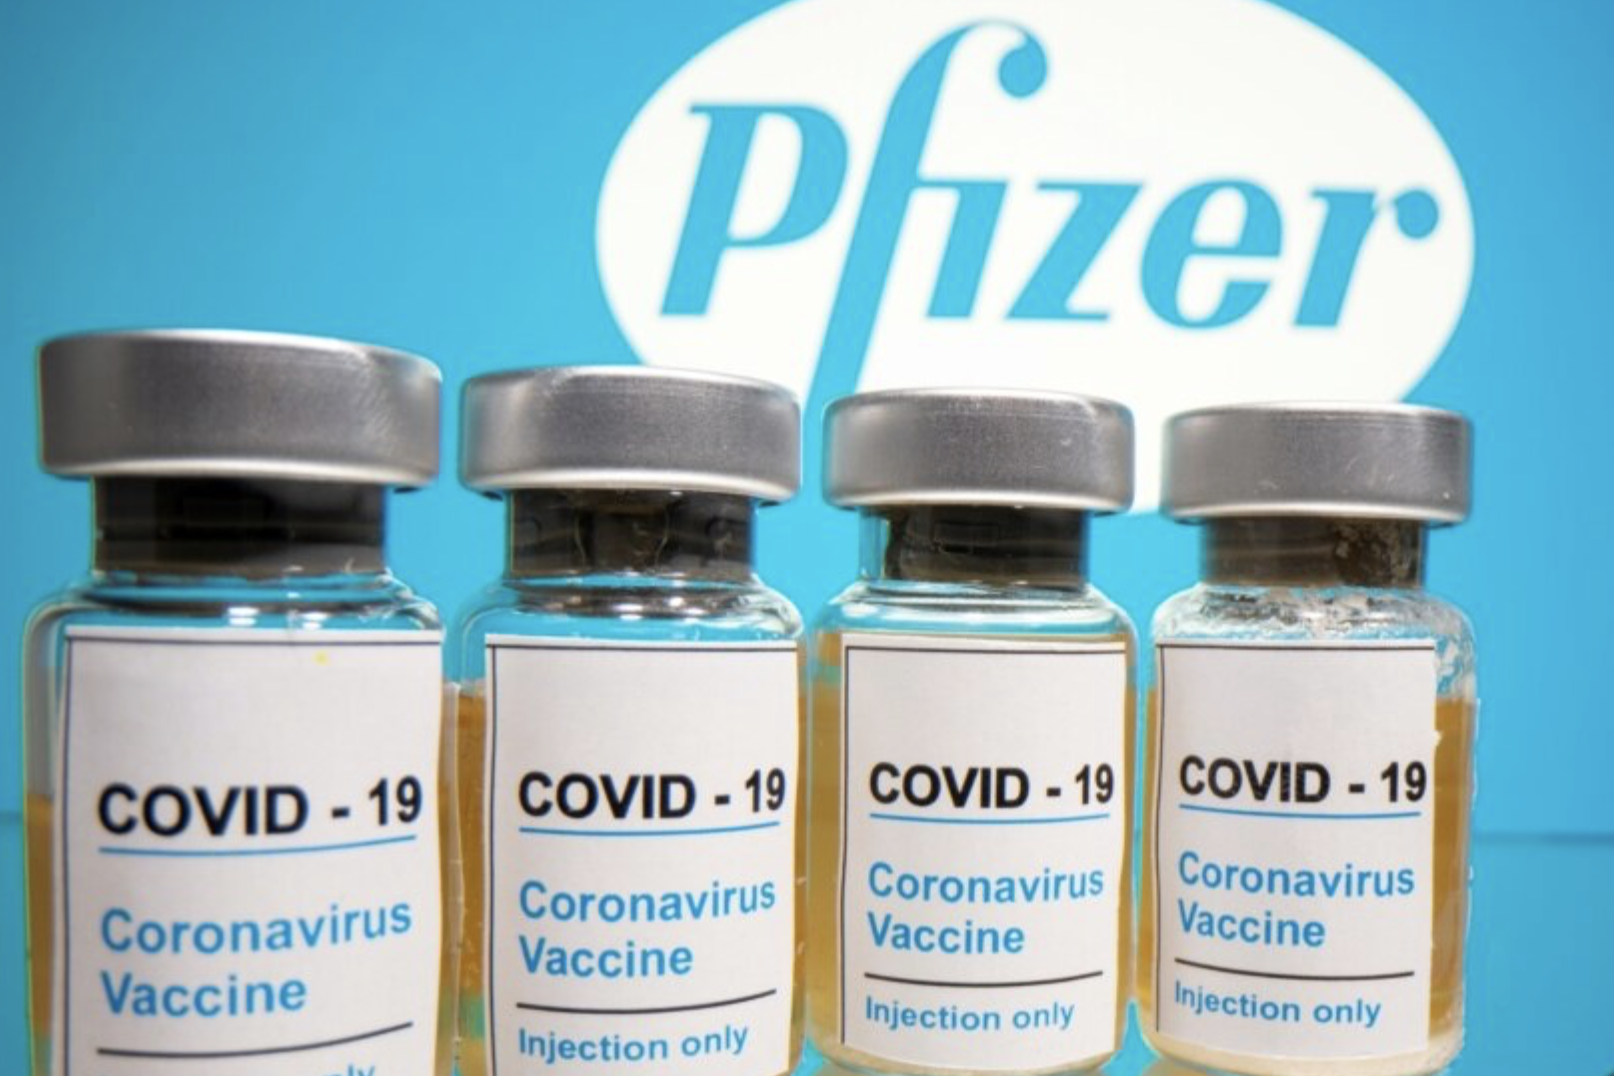 Вакцина Pfizer дает 90% защиты через 21 день, но в первые дни после вакцинации усиливается риск заражения — исследование